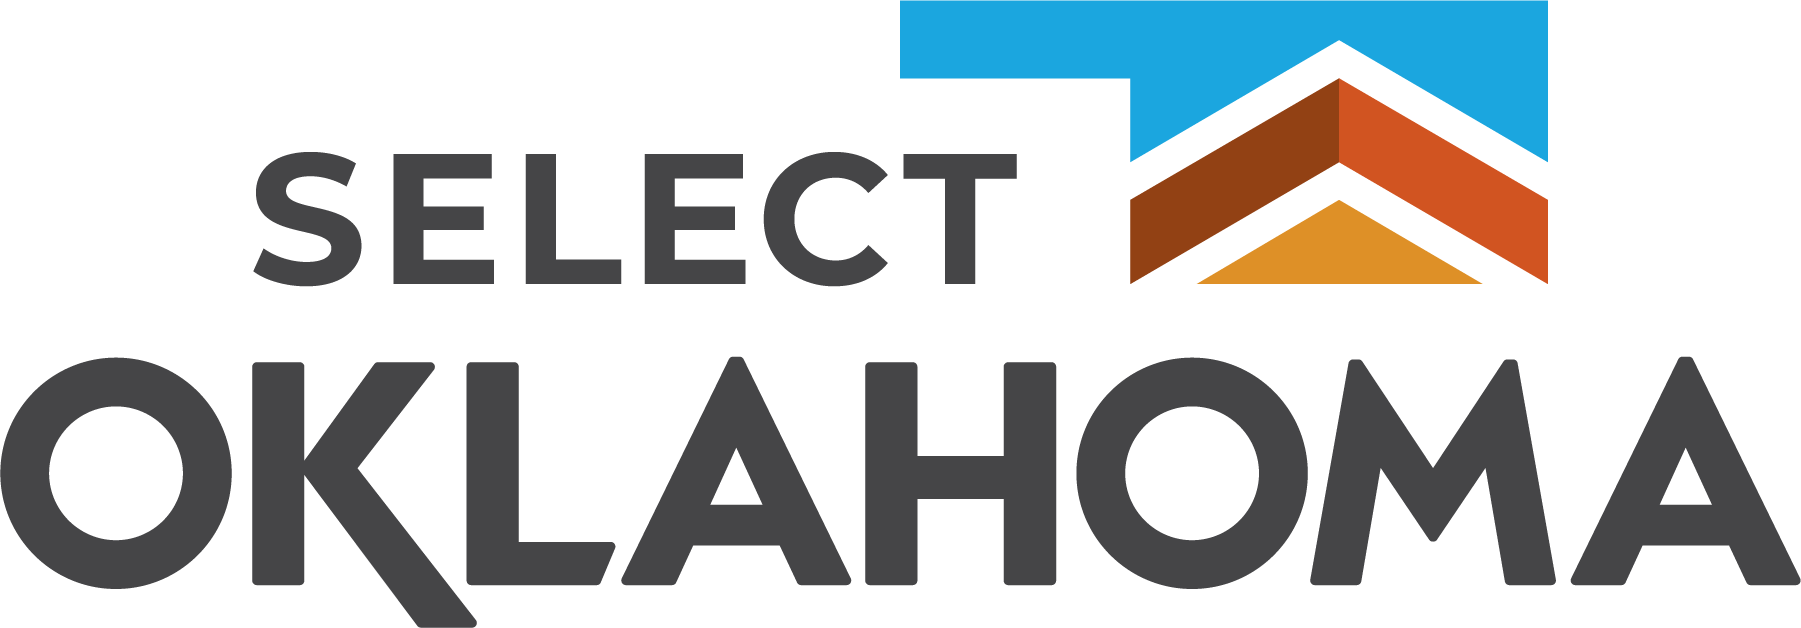 Select Oklahoma